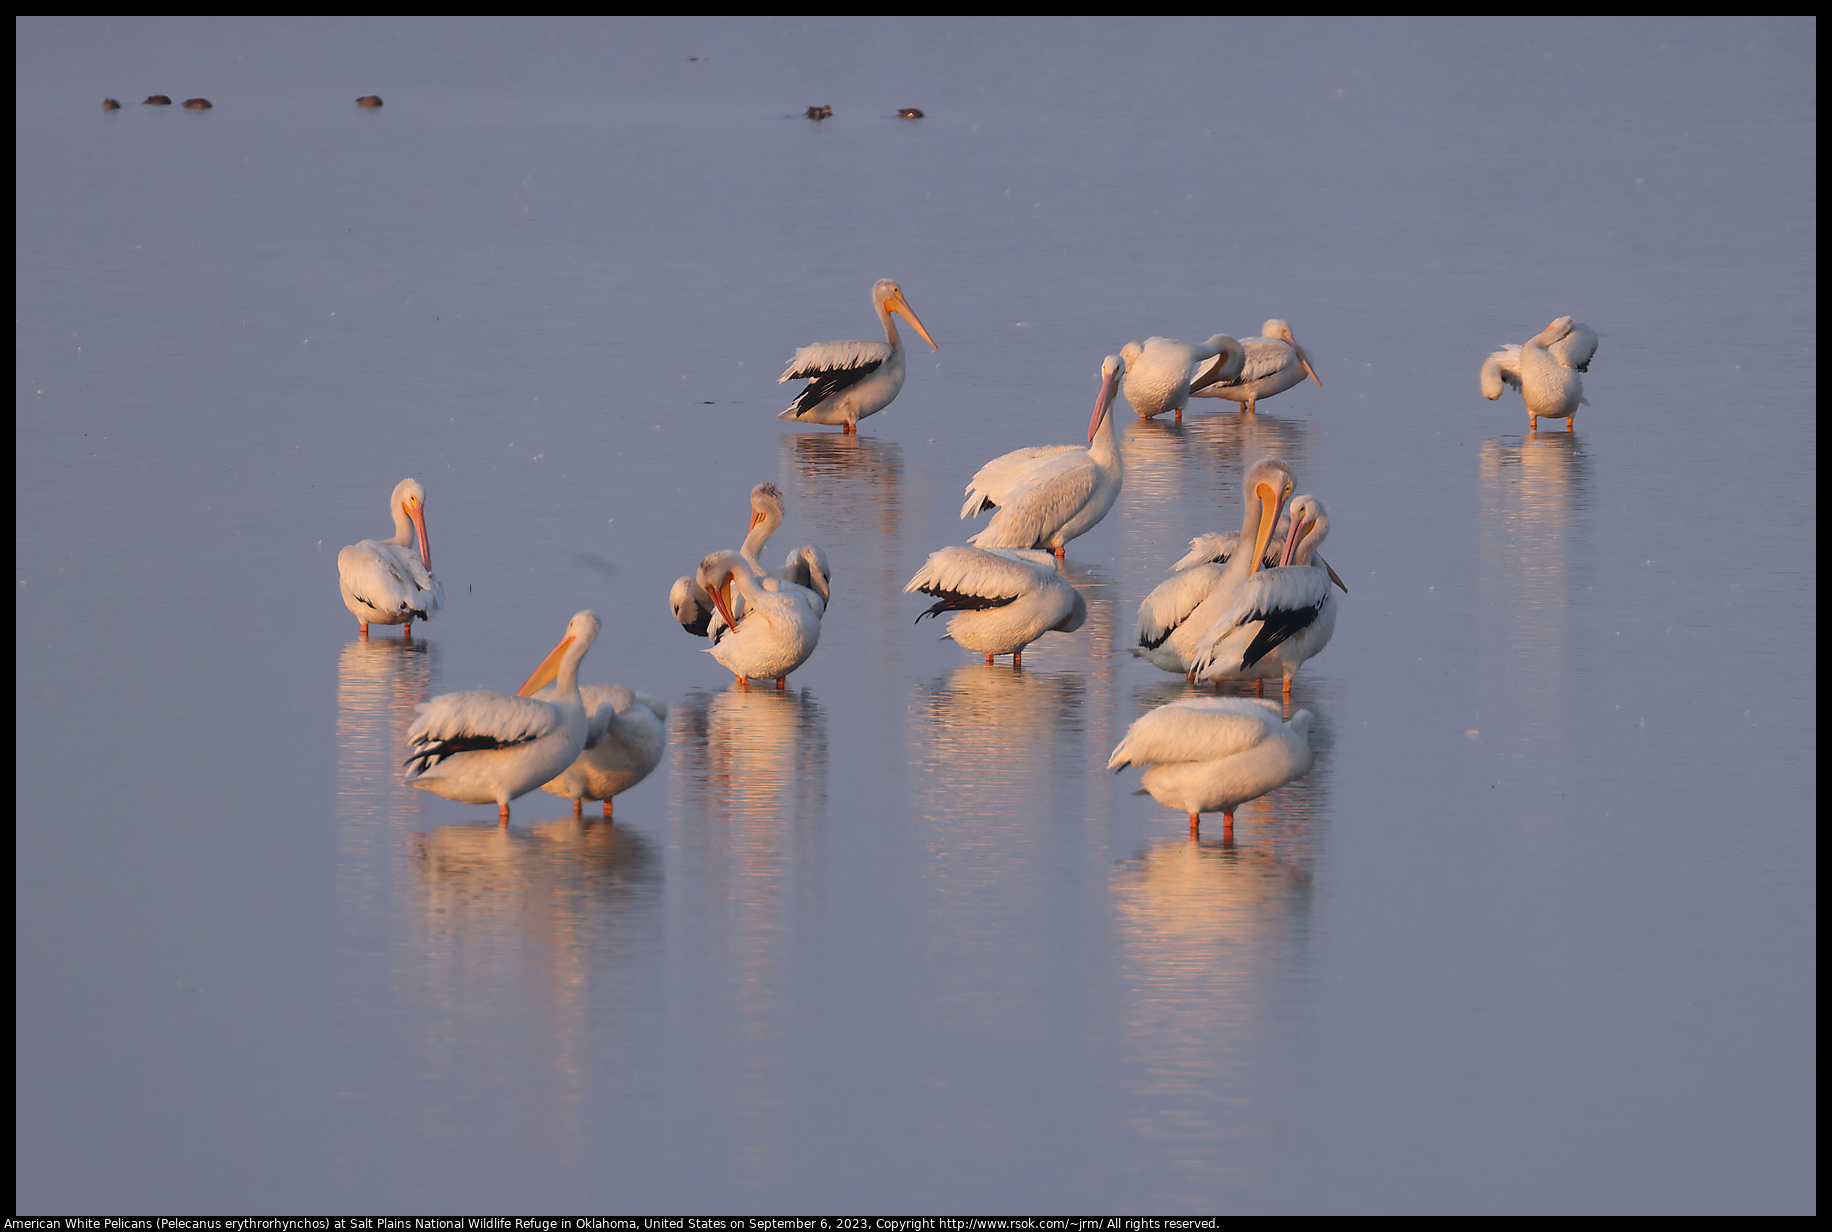 American White Pelicans (Pelecanus erythrorhynchos) at Salt Plains National Wildlife Refuge in Oklahoma, United States on September 6, 2023